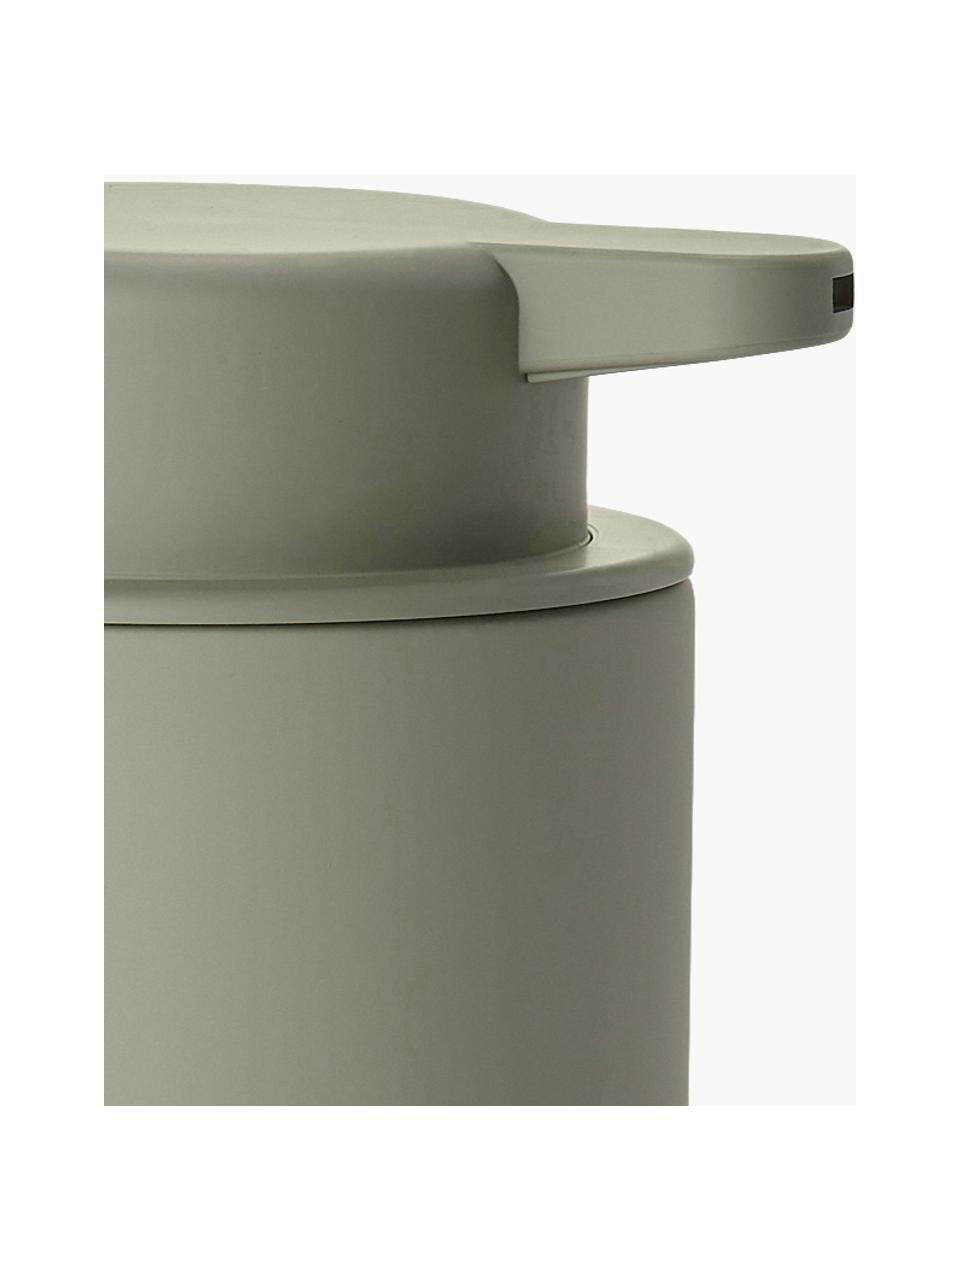 Seifenspender Ume mit Soft-Touch-Oberfläche, Behälter: Steingut überzogen mit So, Olivgrün, Ø 8 x H 13 cm